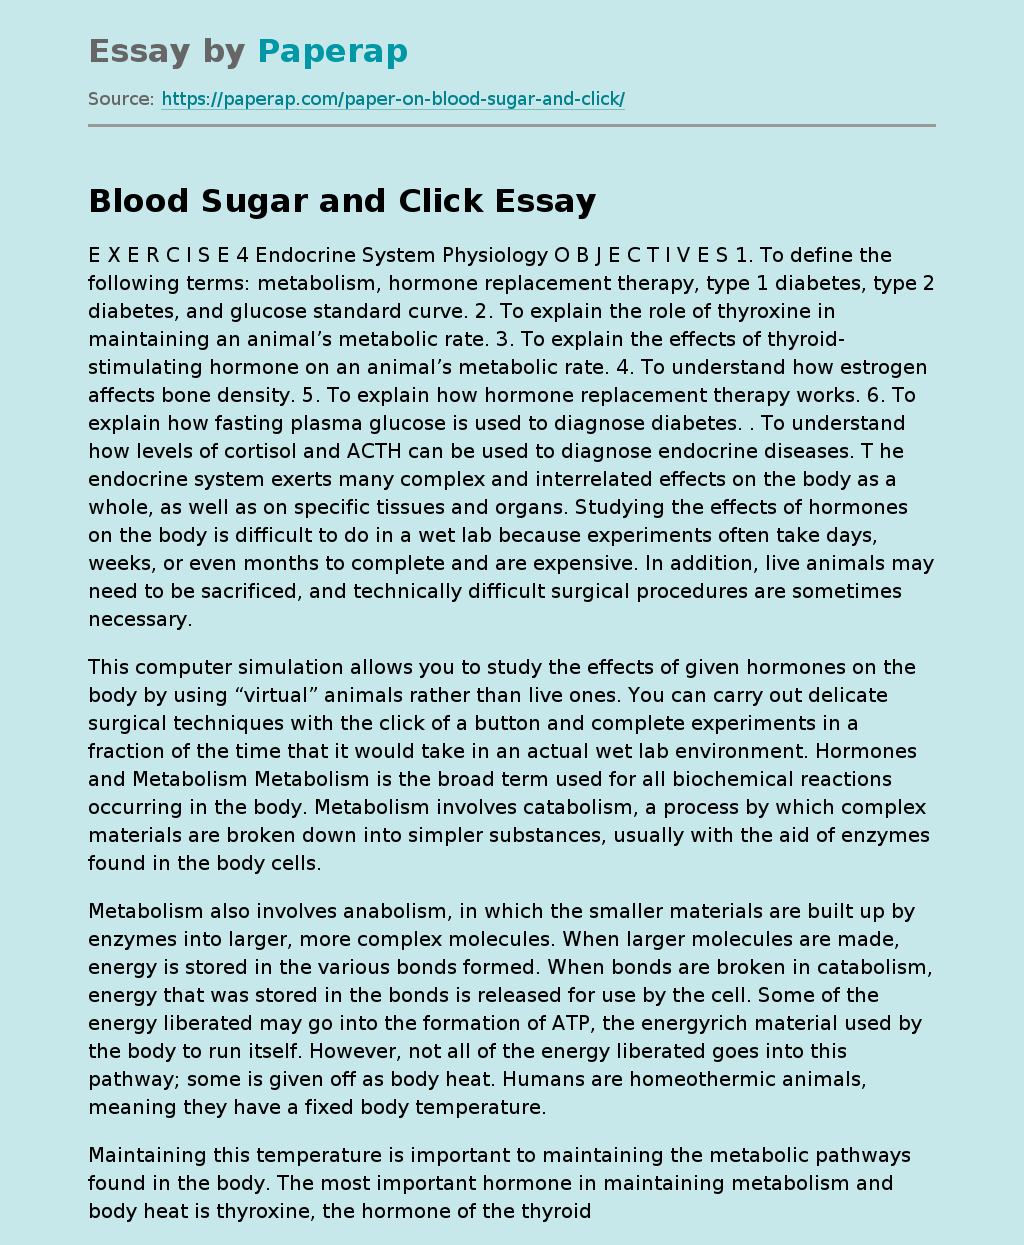 Blood Sugar and Click